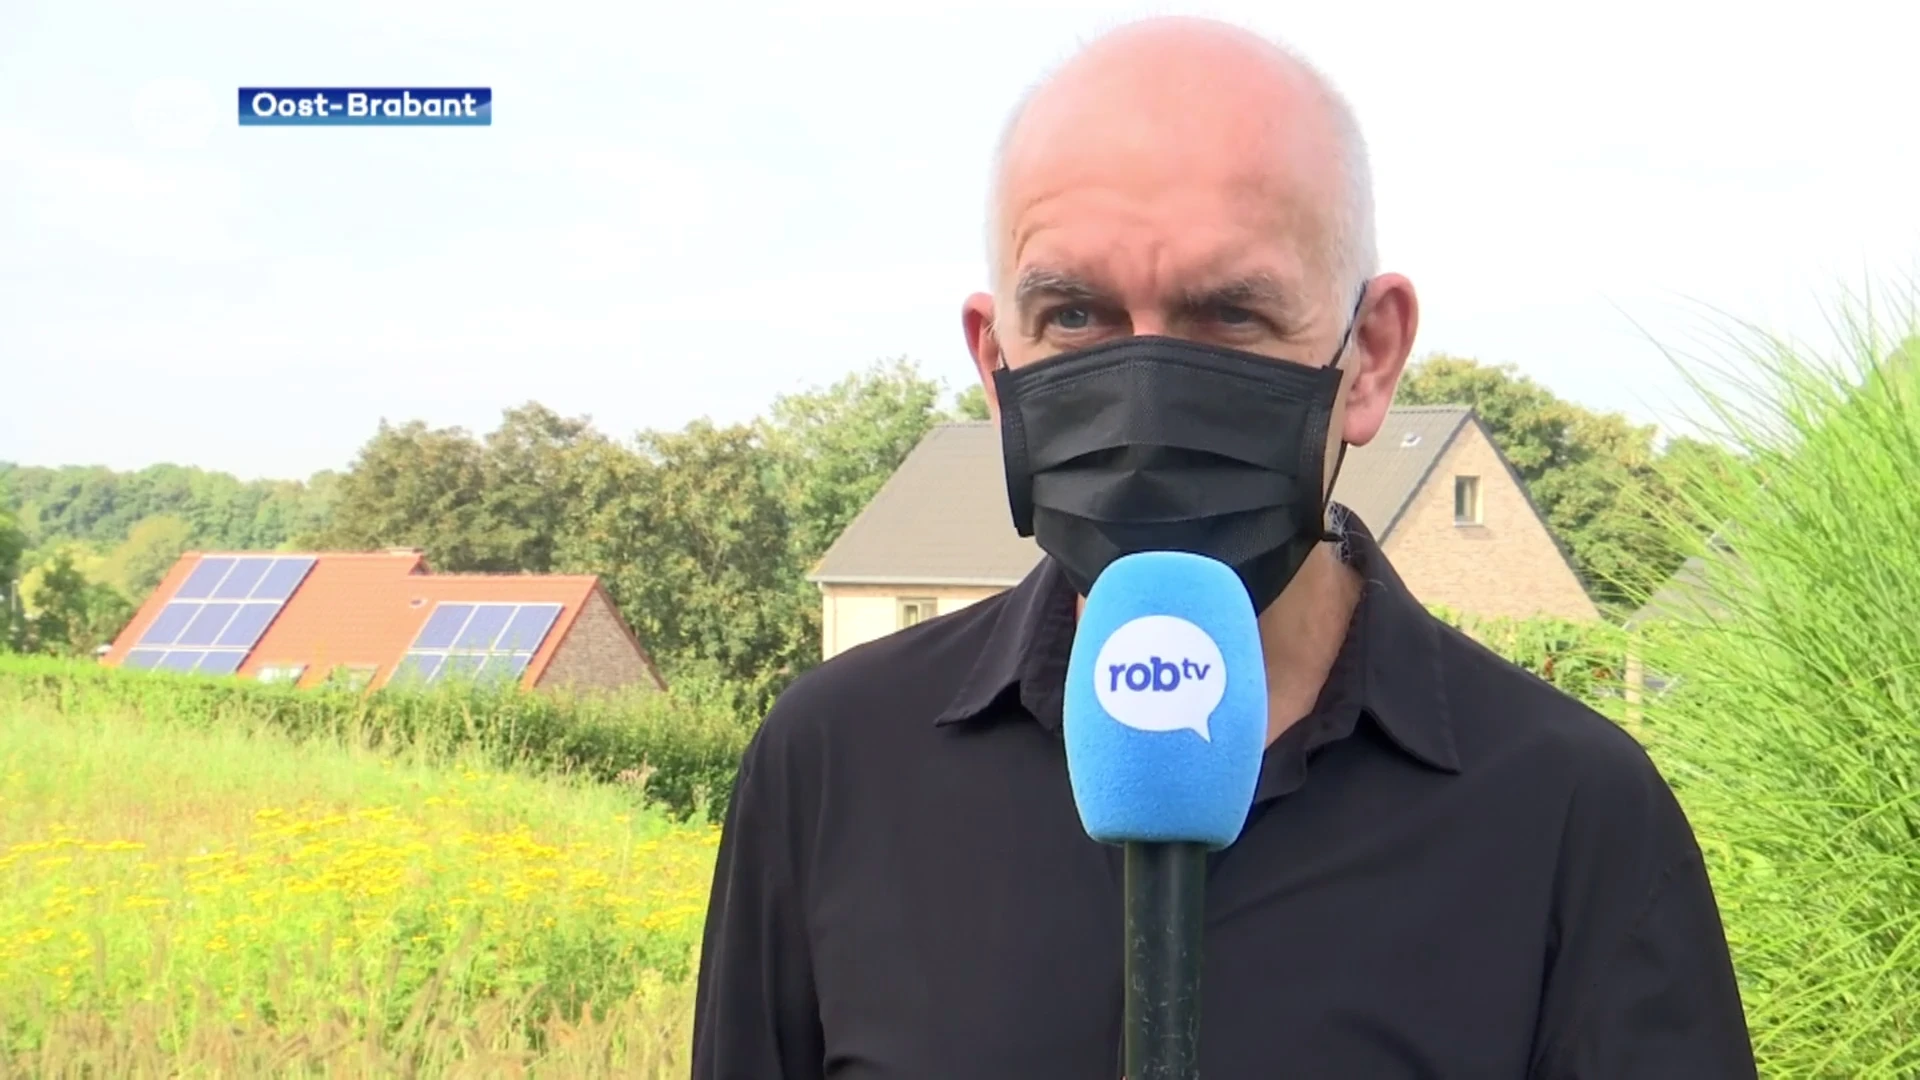 Biostatisticus Geert Molenberghs over WK zonder mondmaskers: "Dat is niet de meest verstandige beslissing"